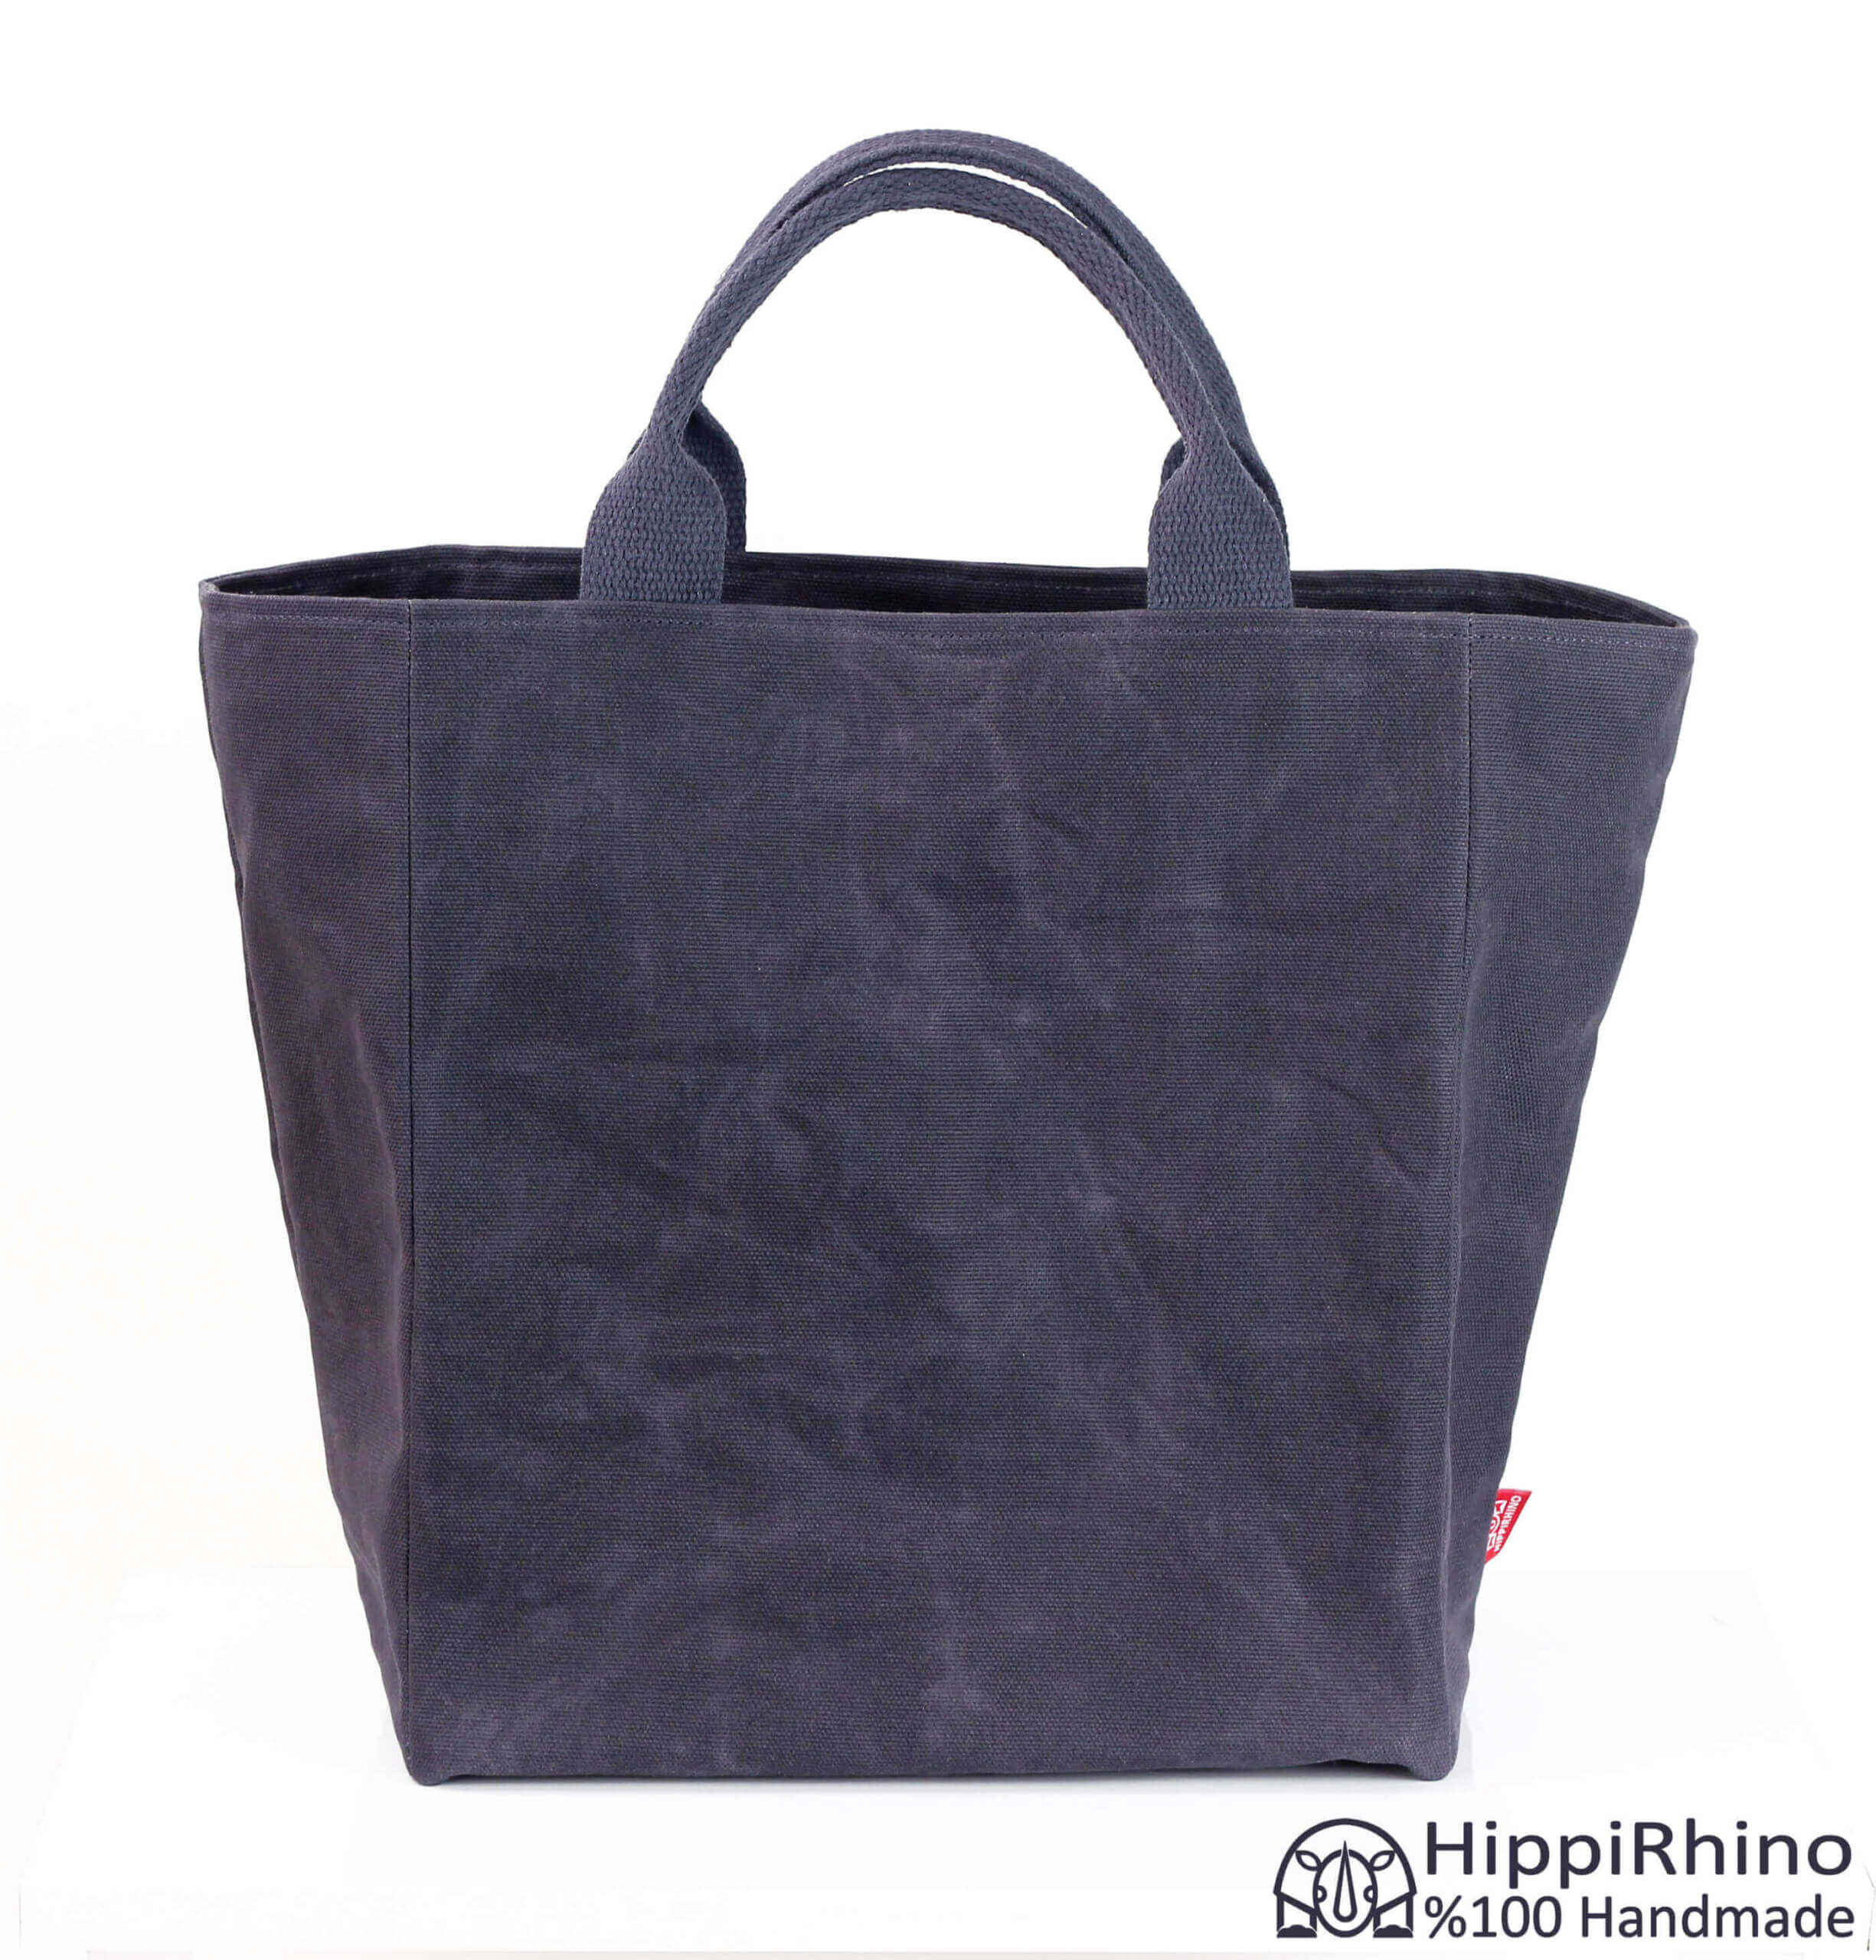 Waxed Reusable Canvas Shopping Bag Cotton Handles Eco-Friendly Market ...